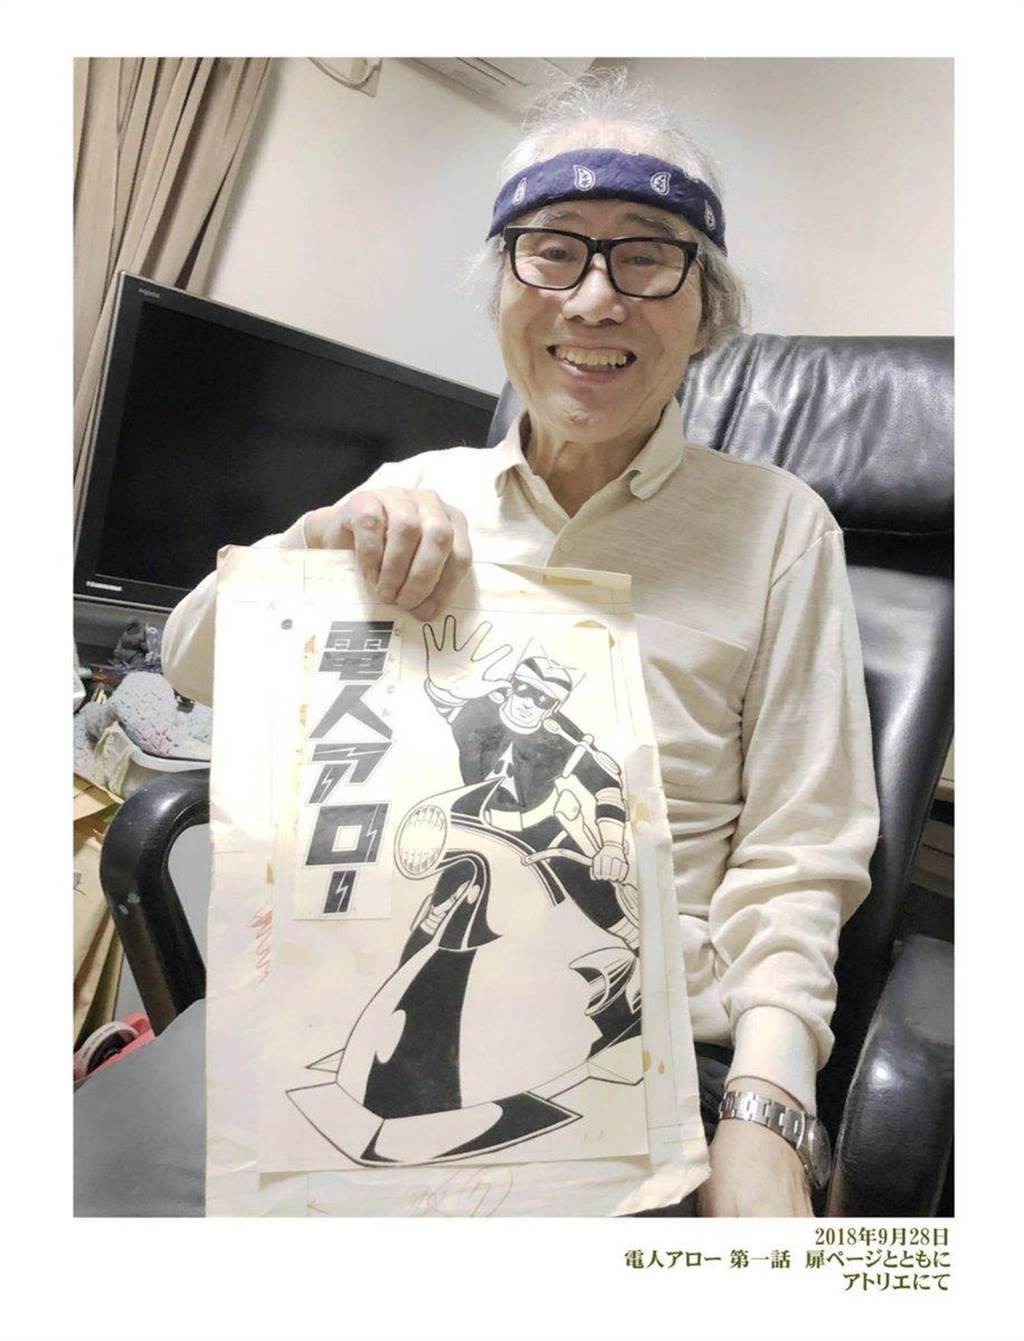 將《超人力霸王》改編為漫畫作品的日本漫畫家一峰大二，經個人官方推特證實，已於今年11月底辭世，享壽84歲。(摘自推特)